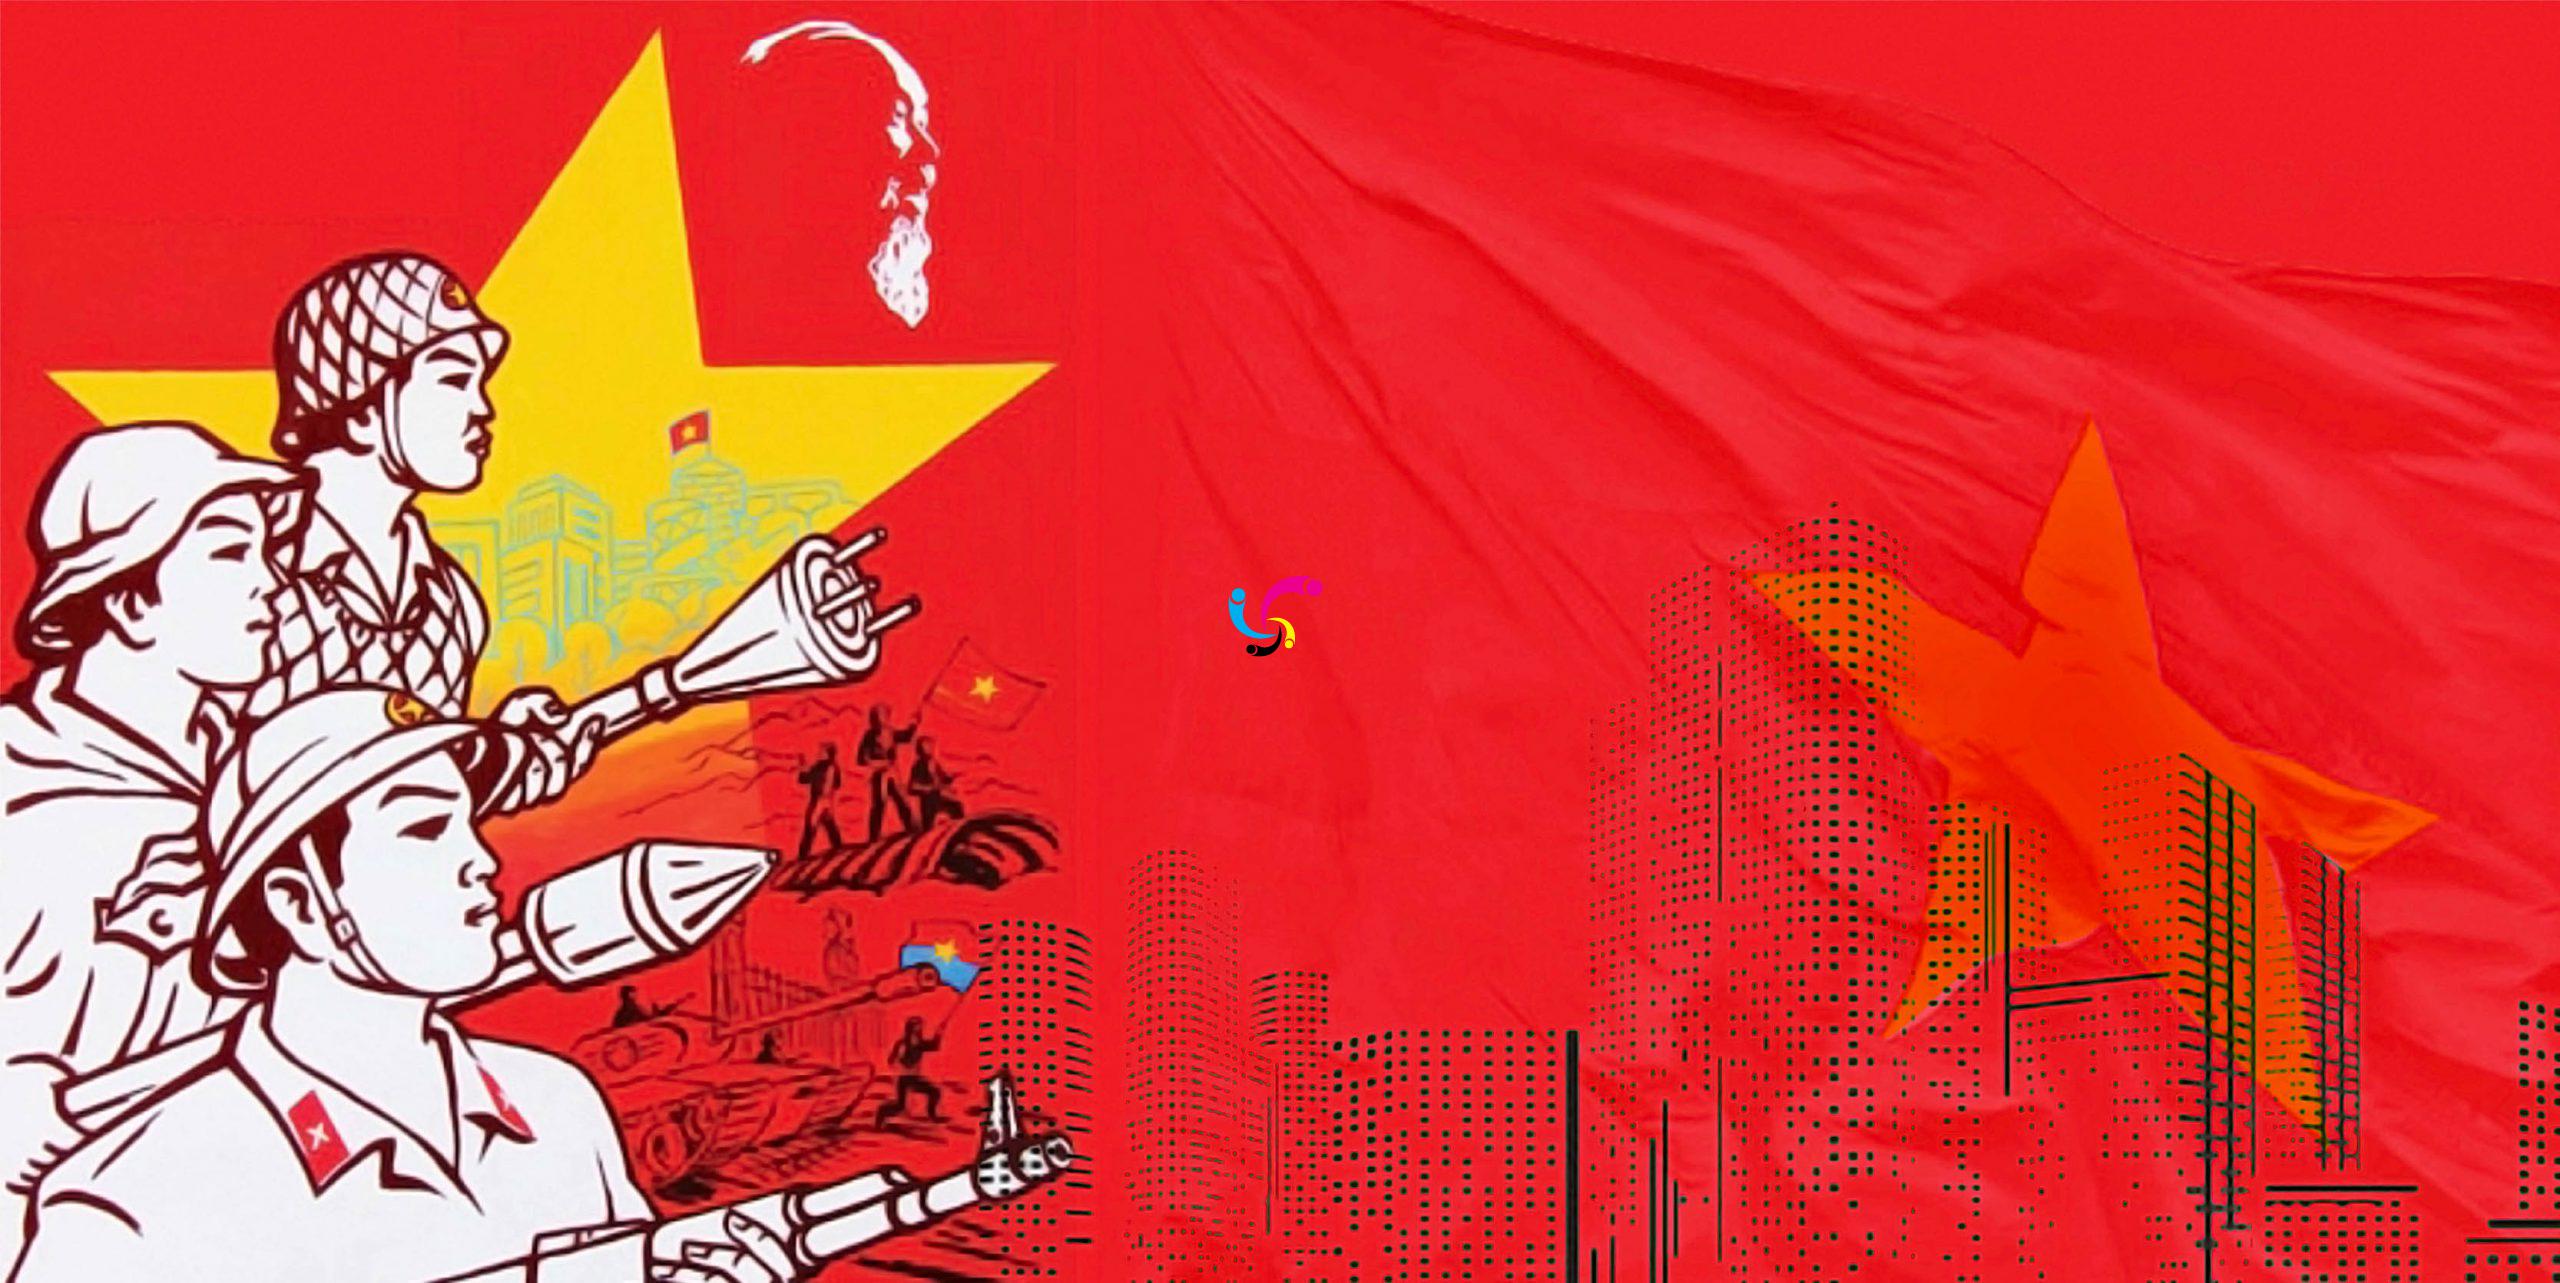 Thật tuyệt vời khi nhìn thấy cờ đỏ sao vàng rực rỡ trên bầu trời! Hãy cùng xem hình ảnh này để cảm nhận sự tự hào và đam mê về quê hương Việt Nam.